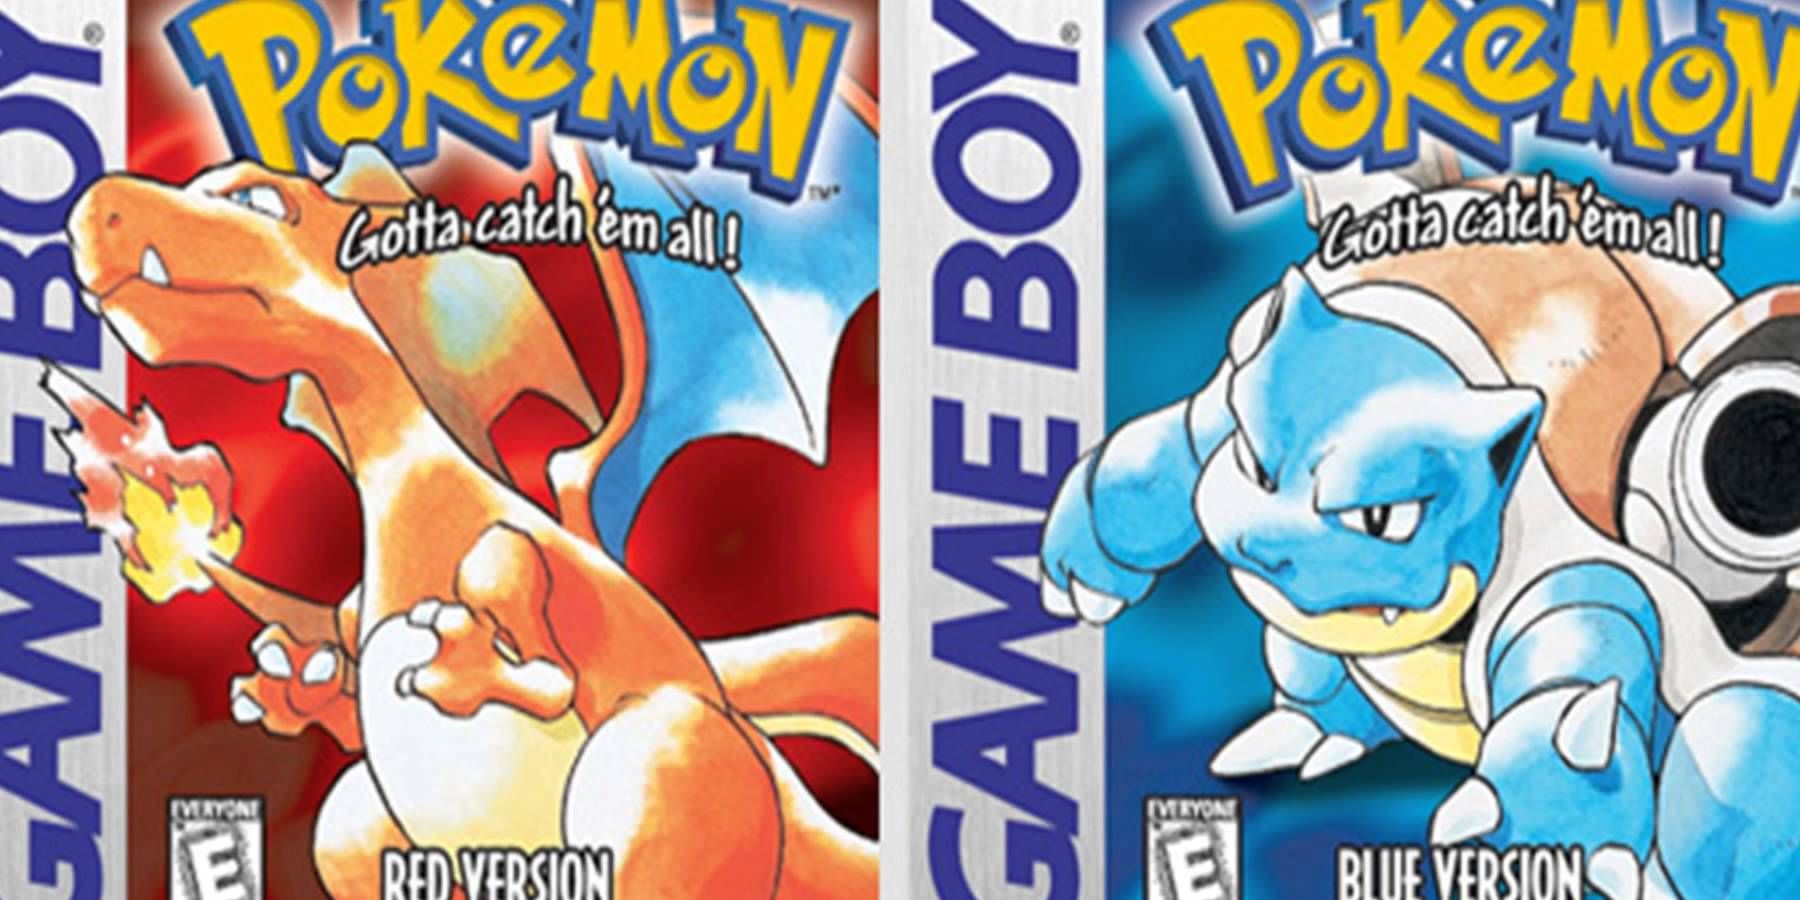 De hoes van Pokemon Red and Blue voor de Nintendo Game Boy